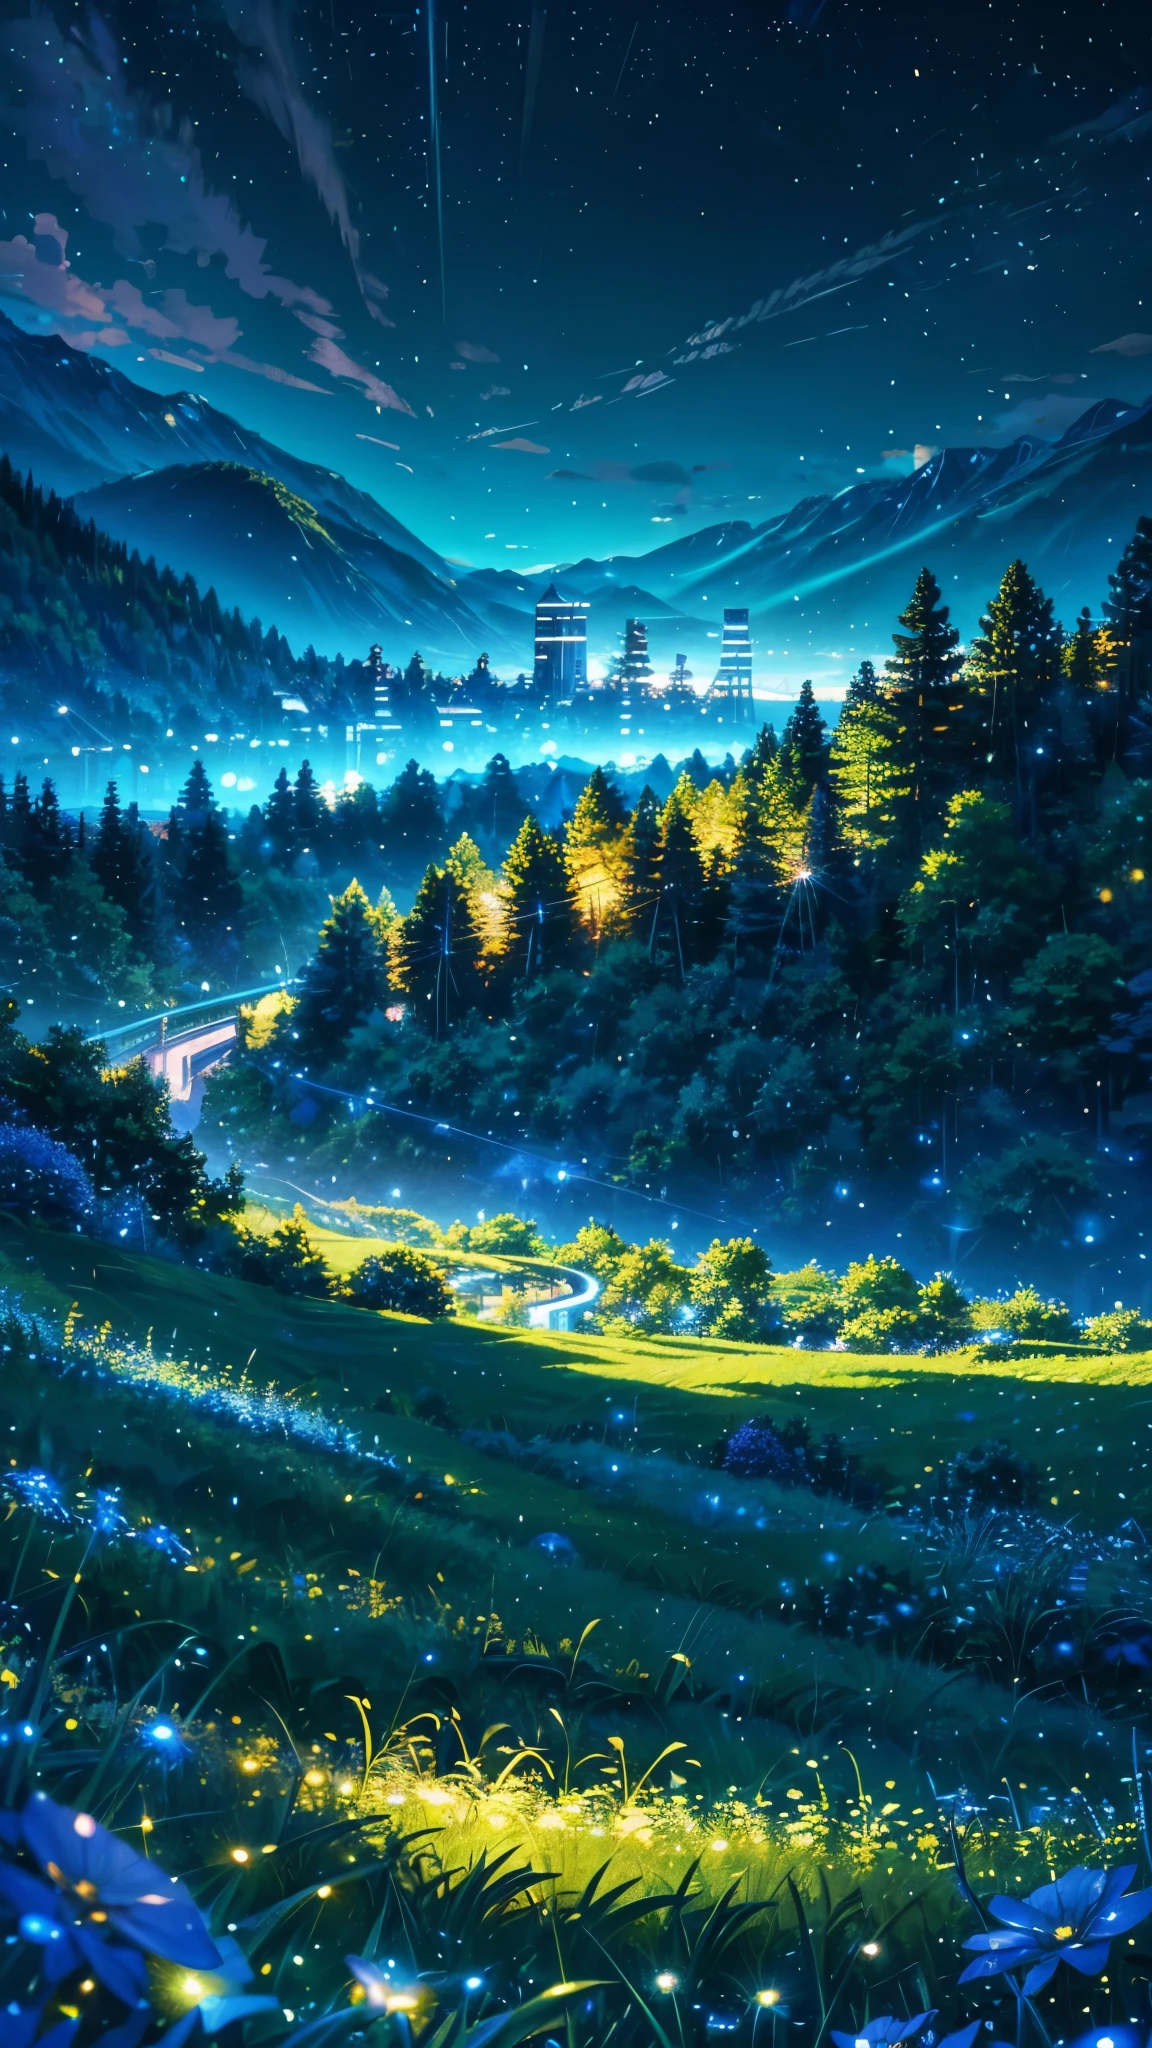 Alpes con paisajes verdes inspirados en anime con vidrio azul brillante como el cielo, efecto brillante y centelleante(Efecto bokeh) (Luciérnagas)